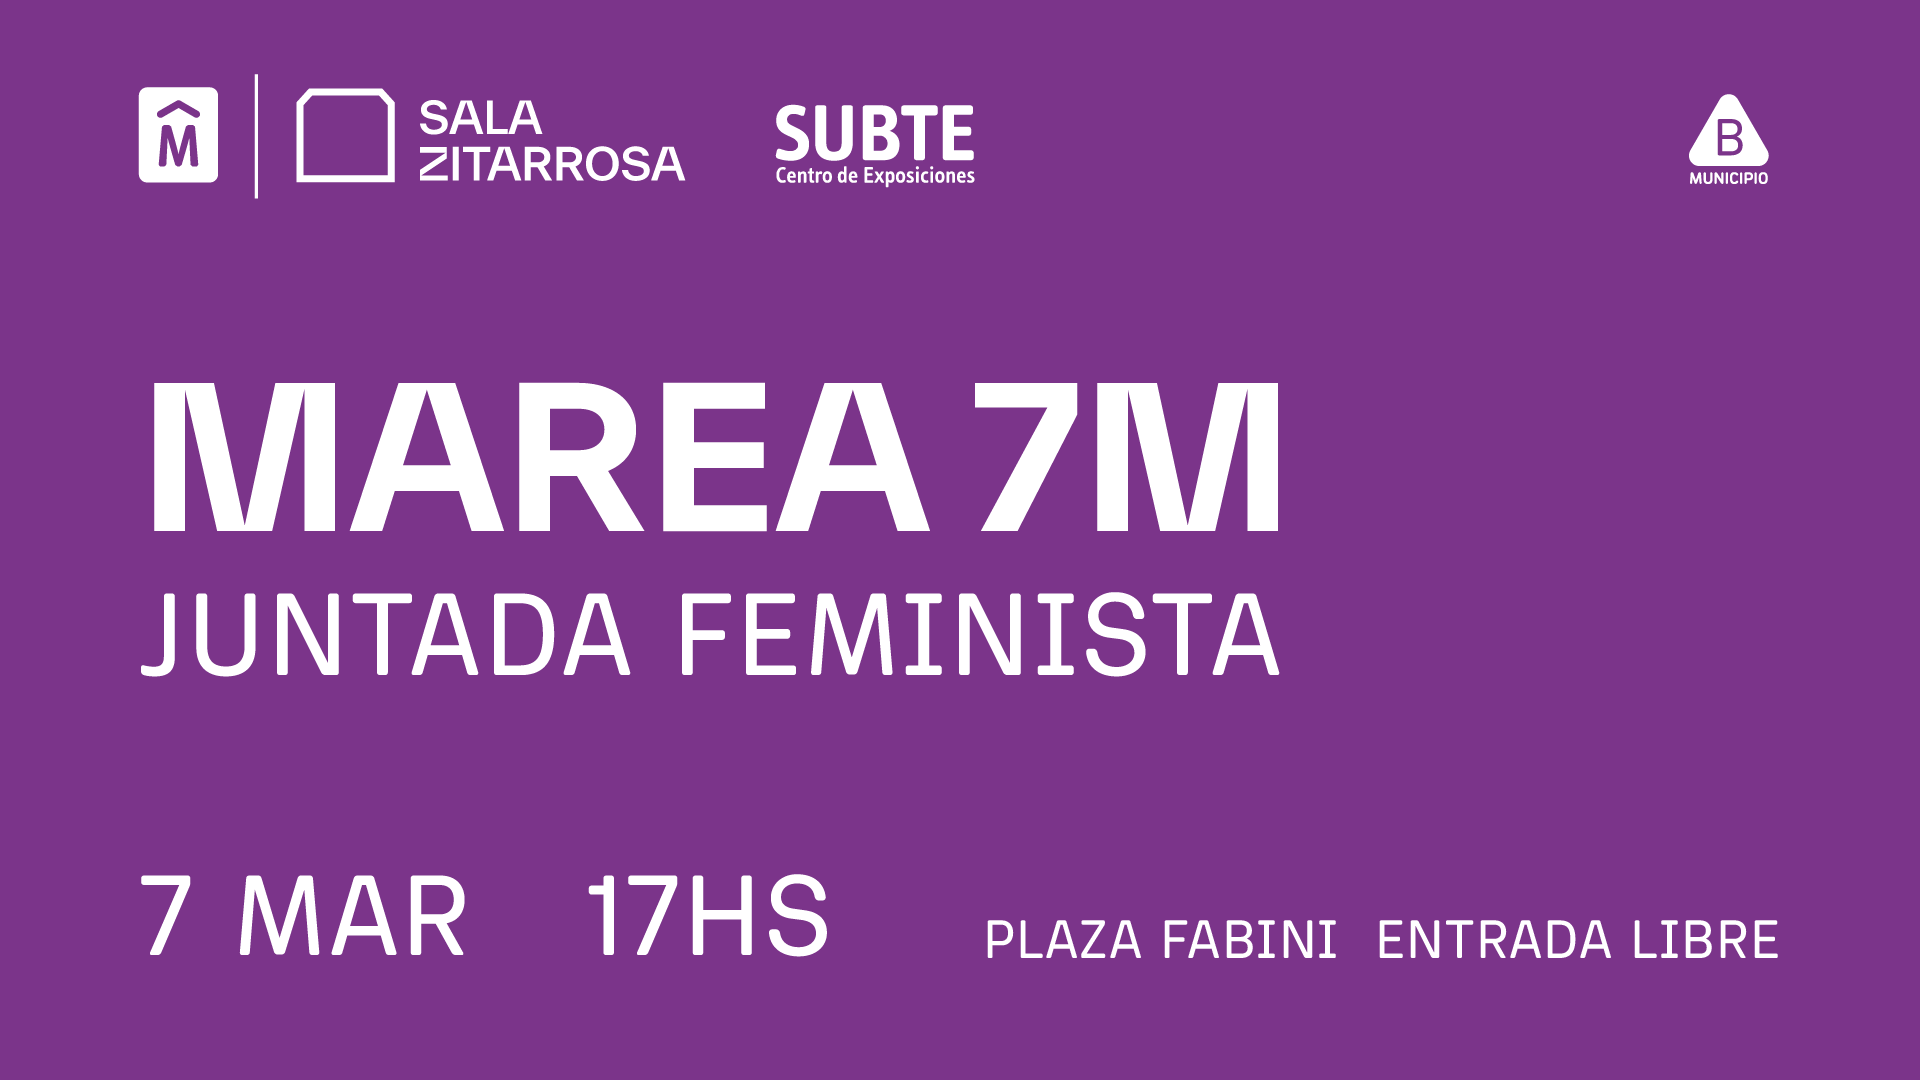 MAREA 7M. Juntada Feminista